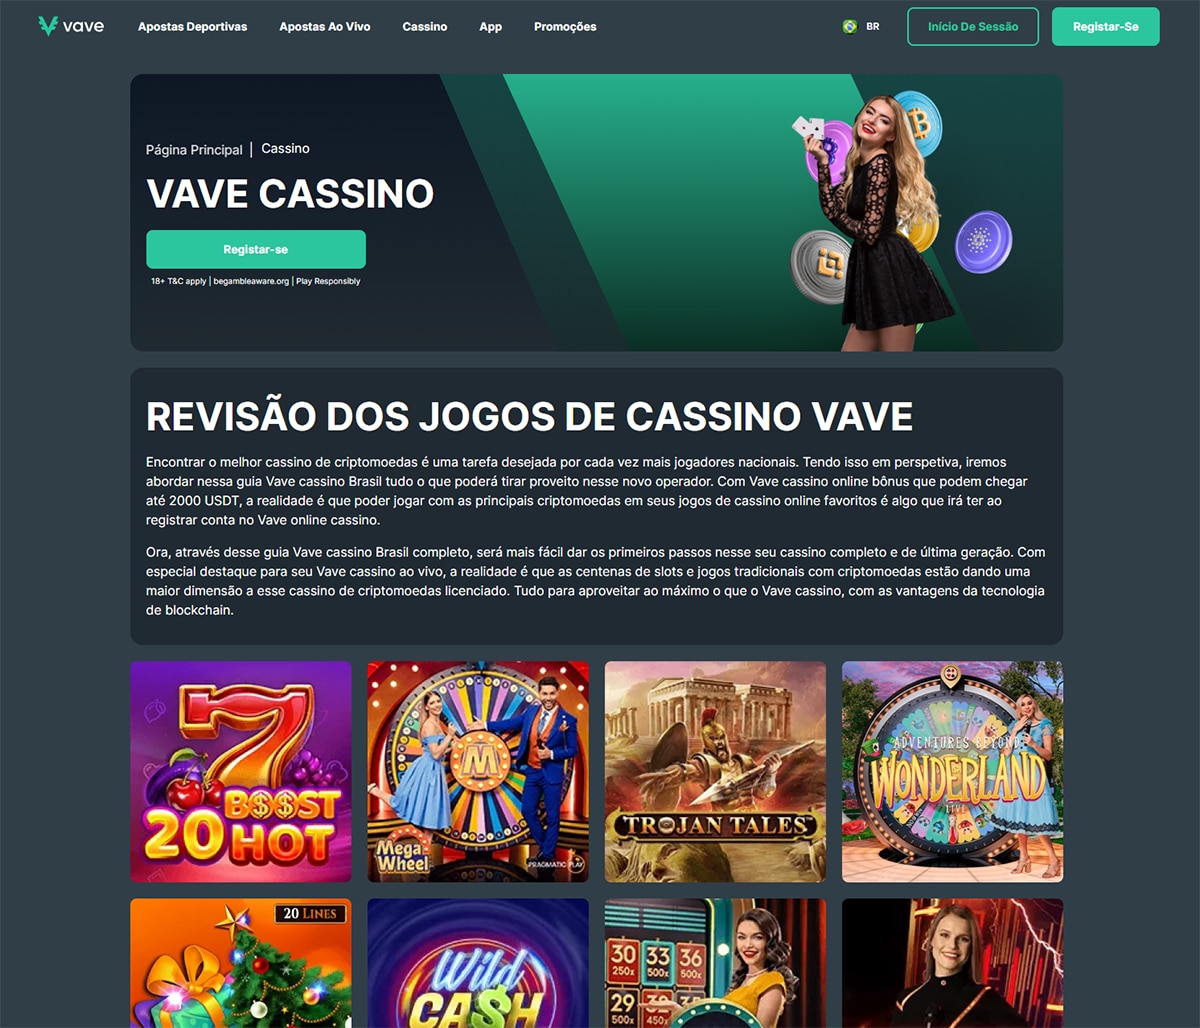 Play Pix Apostas & Casino 2023  Play Pix Brasil é confiável?